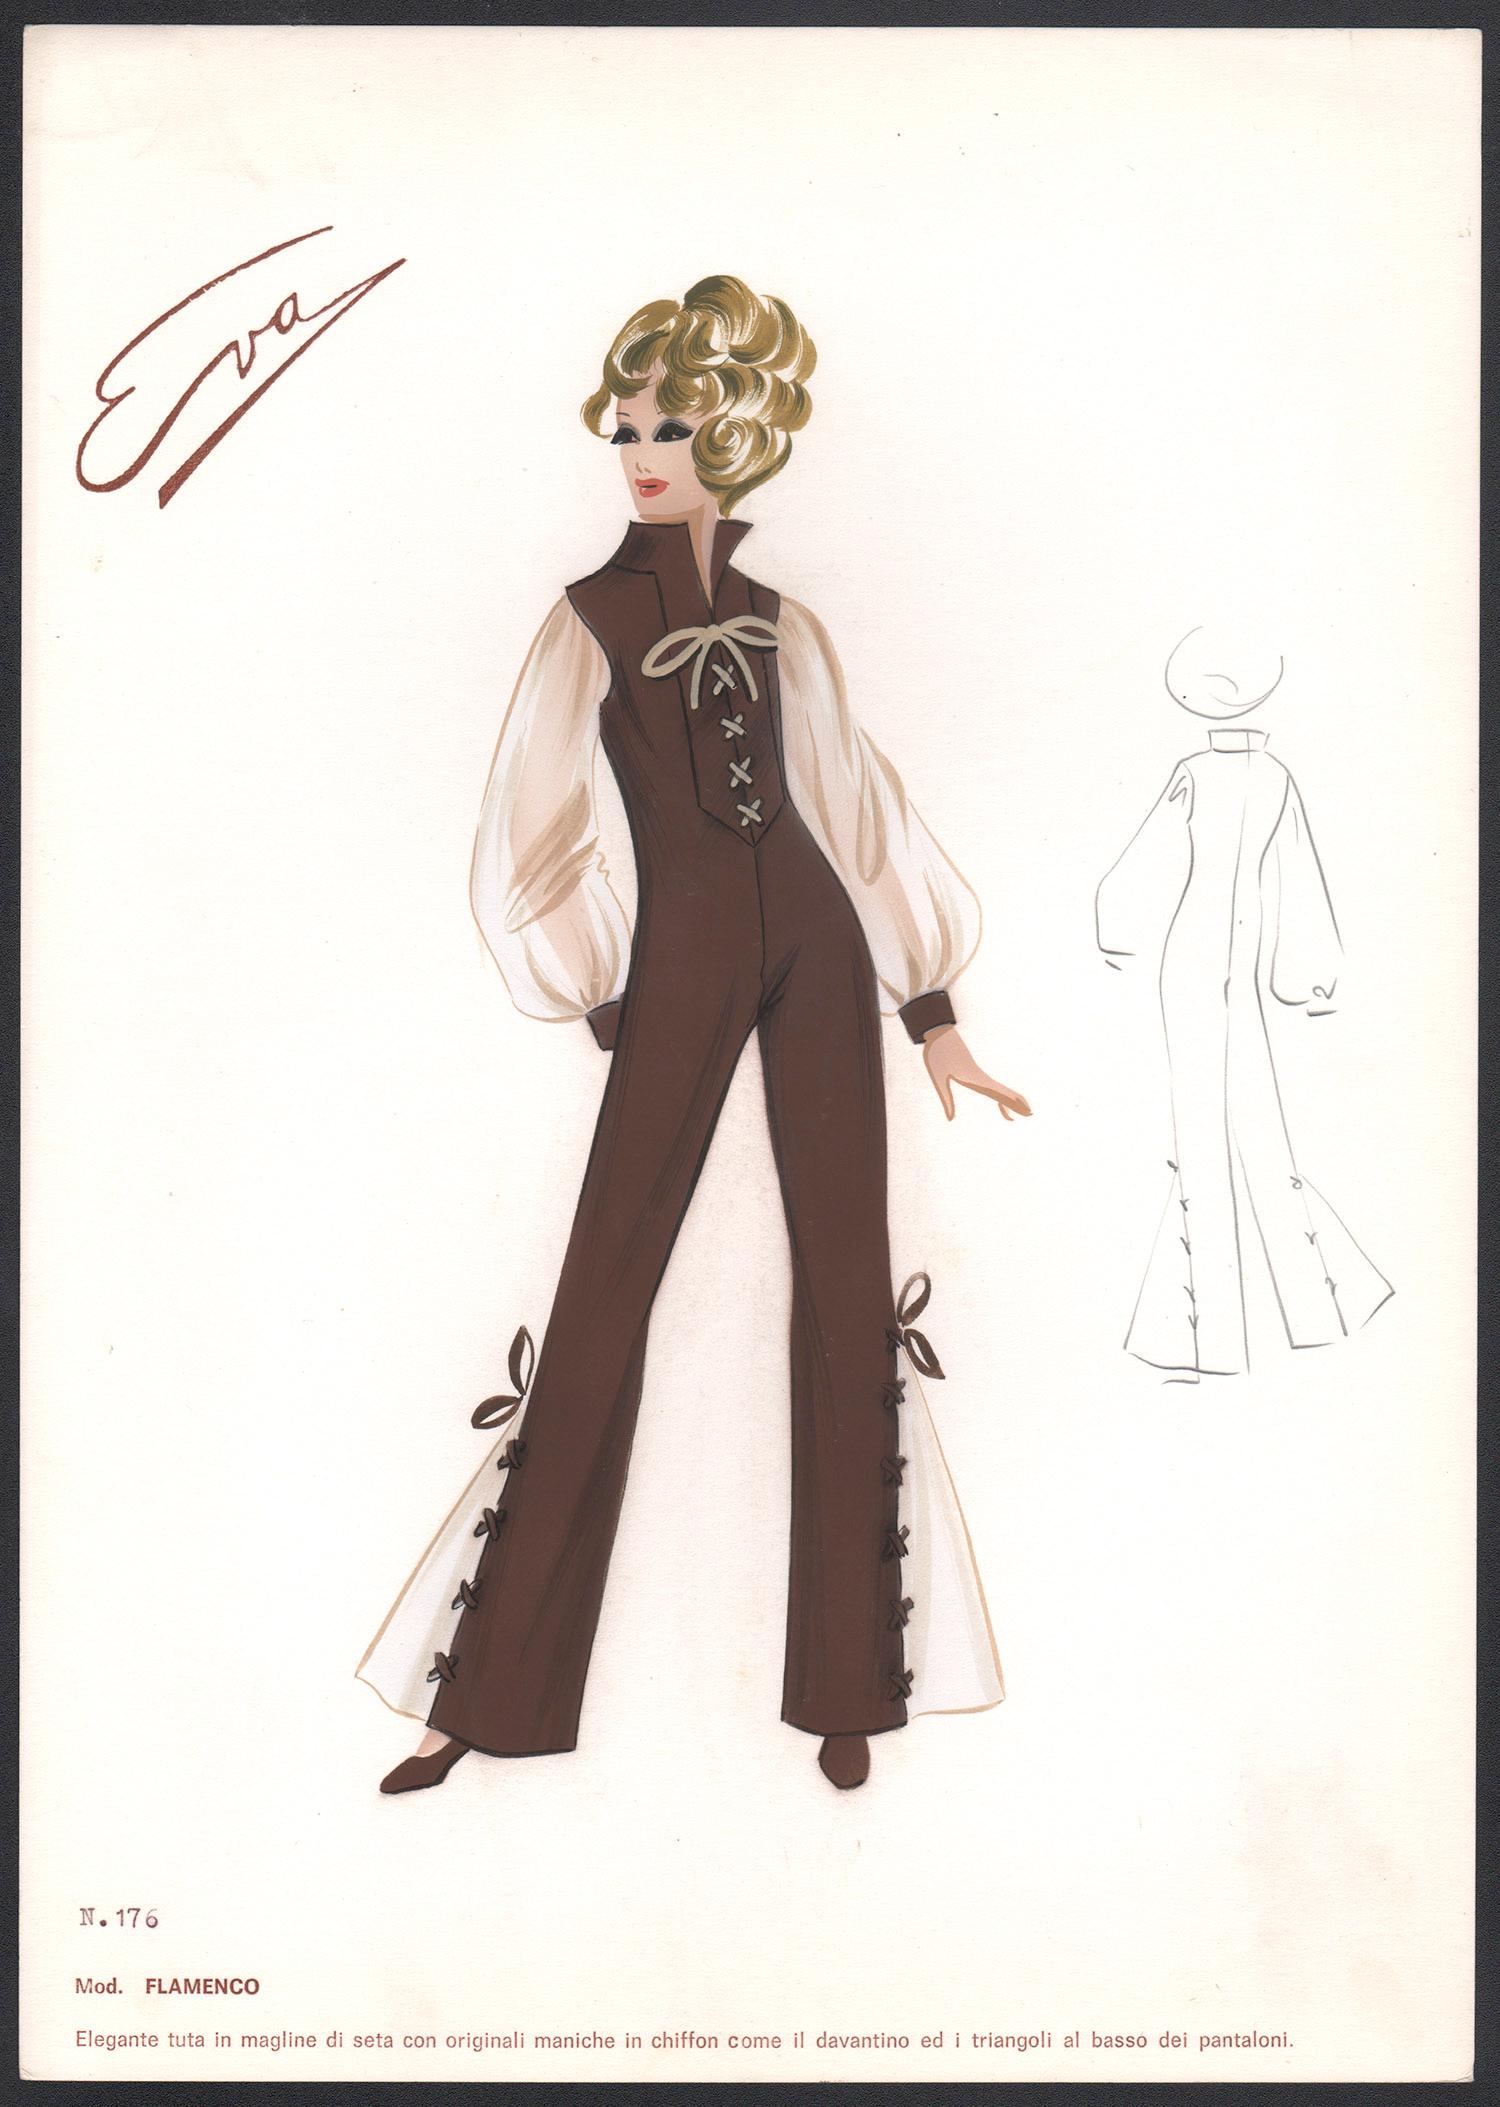 Unknown Figurative Print - 'Flamenco' Italian 1960s Women's Fashion Design Illustration